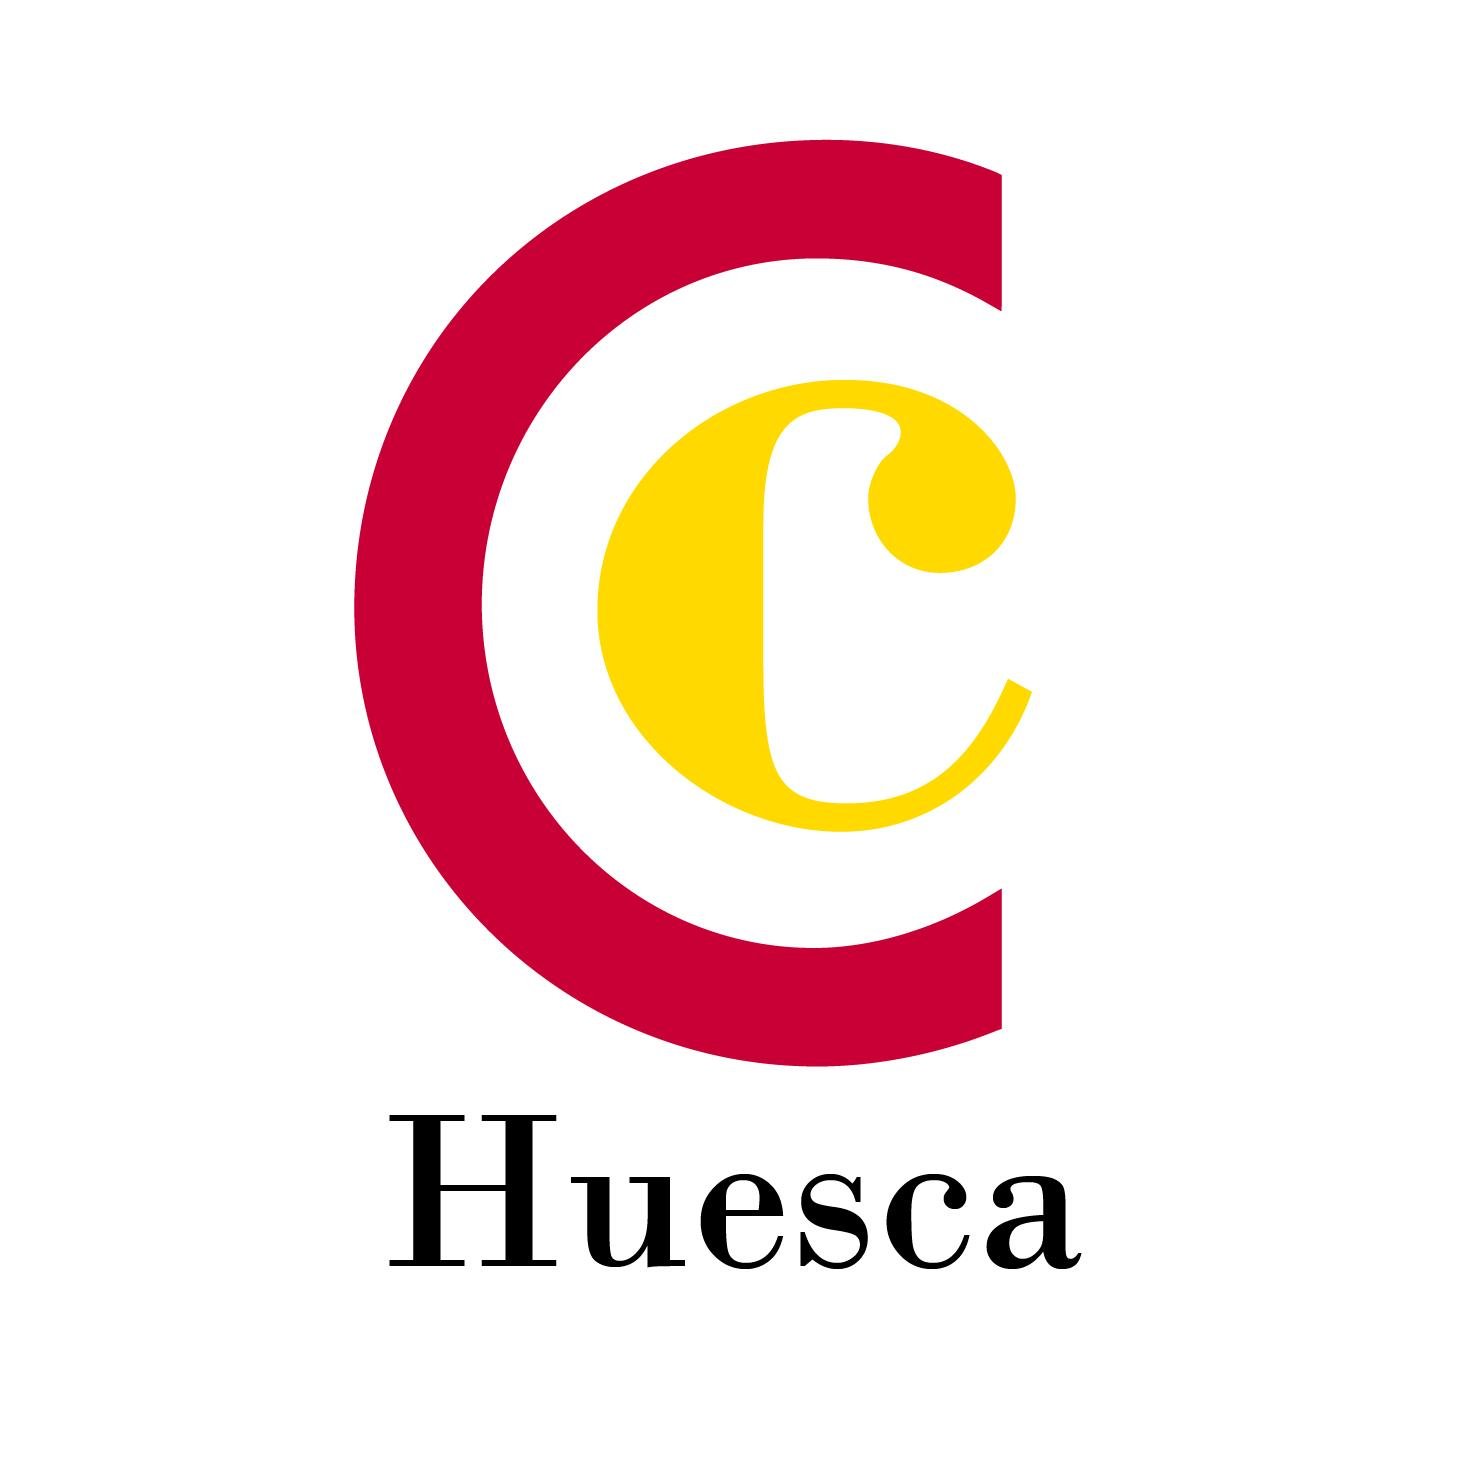 Cámara de Comercio, Industria y Servicios de la provincia de Huesca. Grandes servicios para la pyme y los autónomos. También en https://t.co/NDqjE5Bkzj